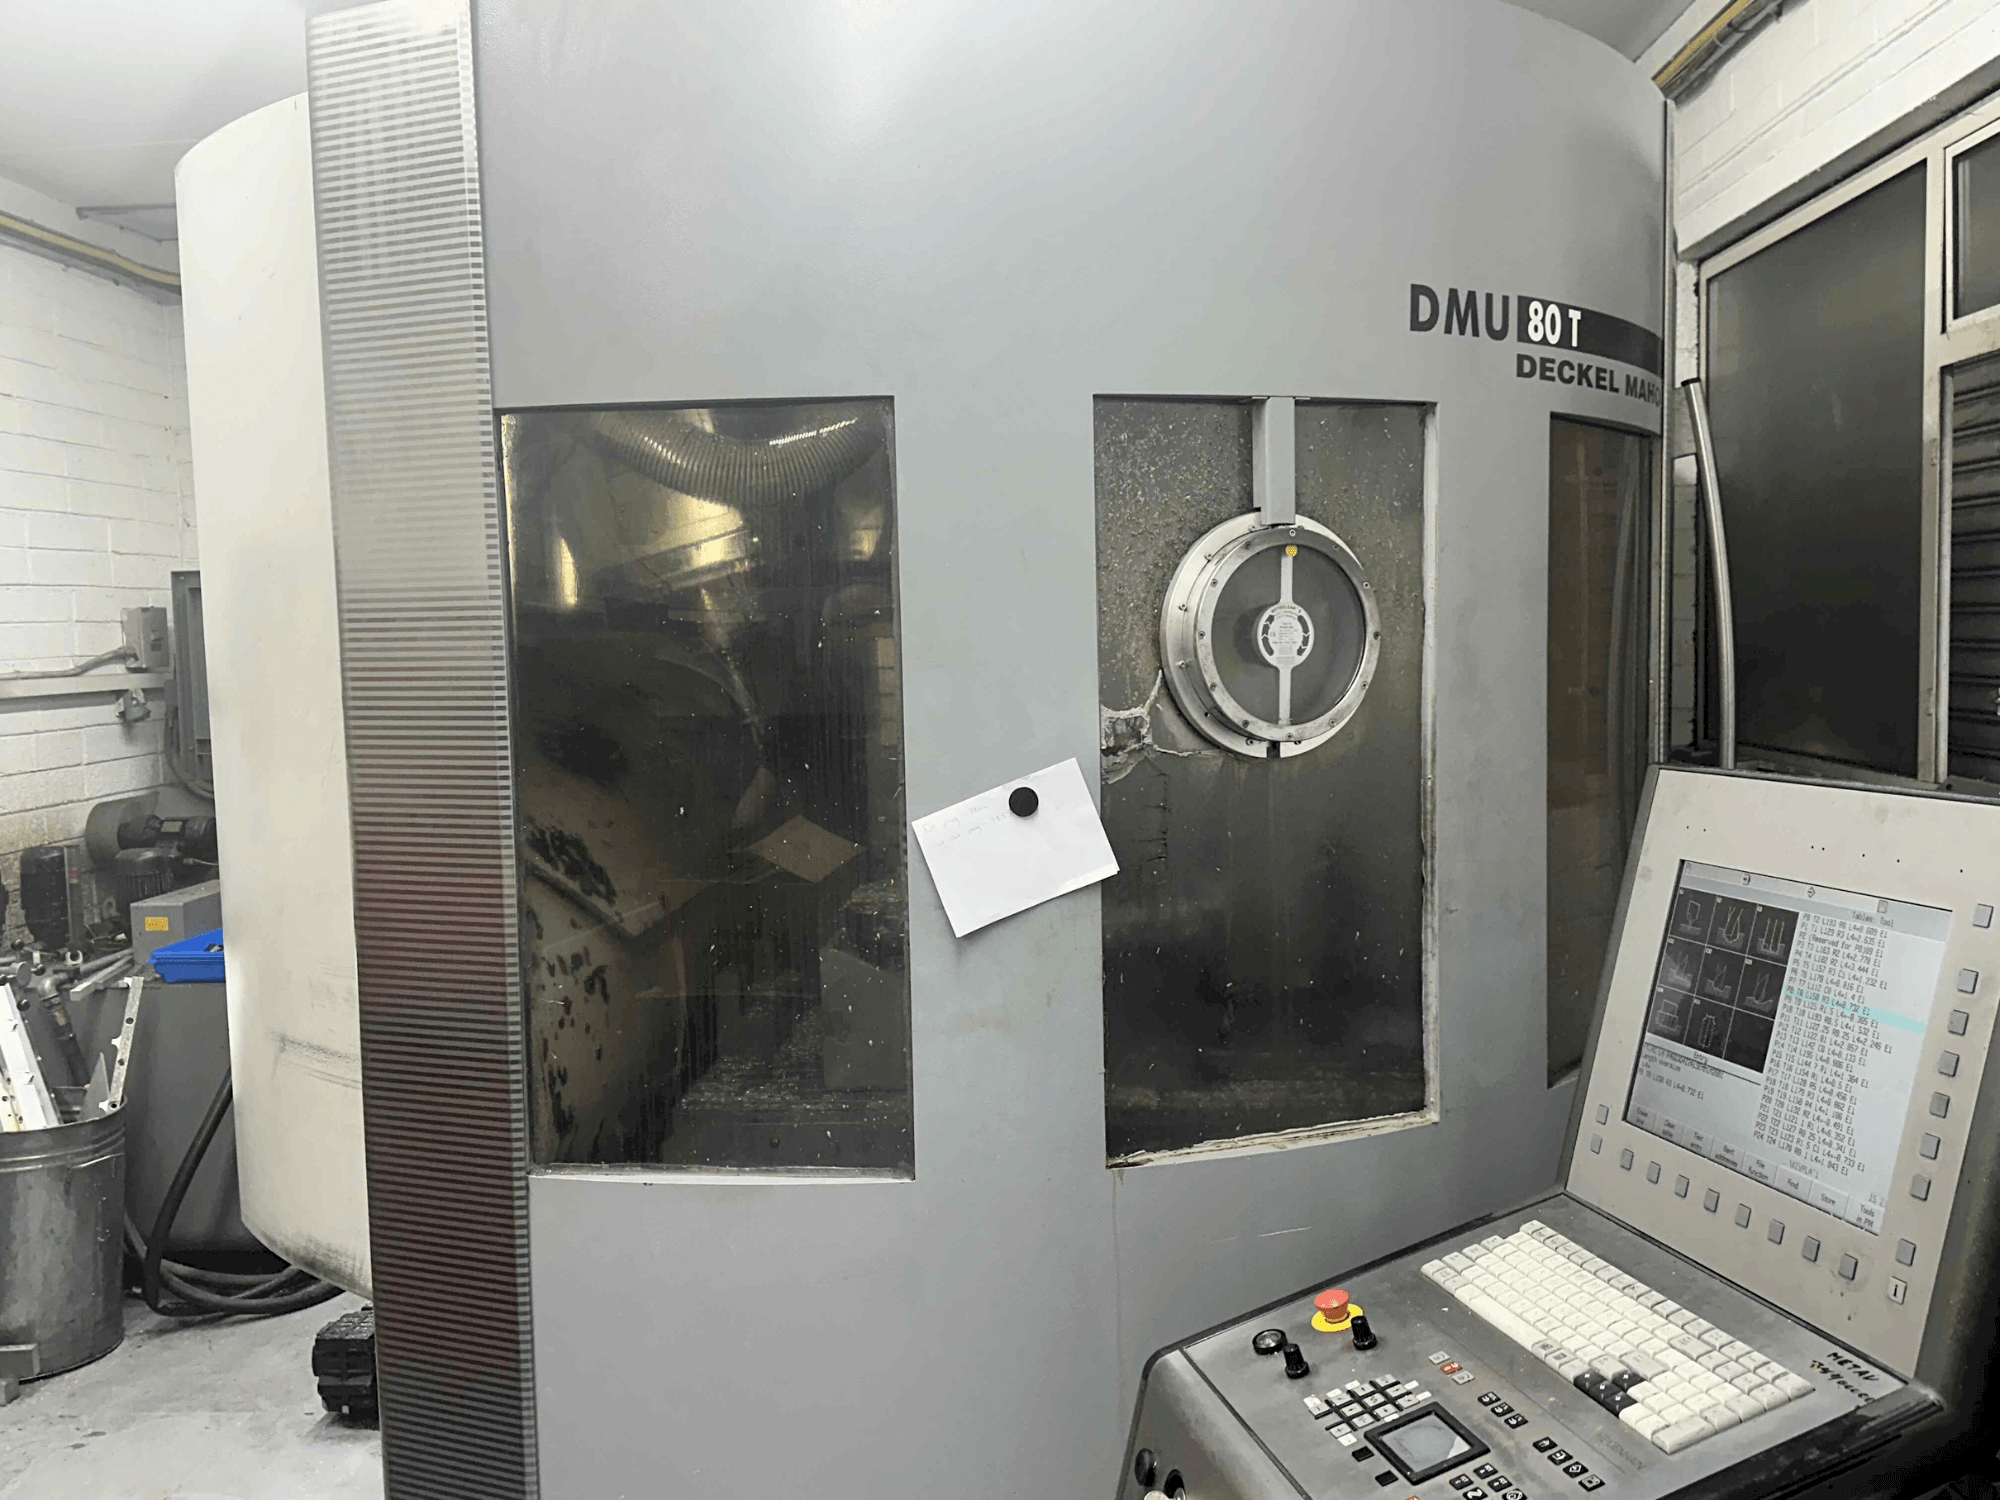 Vista frontal de la máquina DECKEL MAHO DMU 80T (2002)